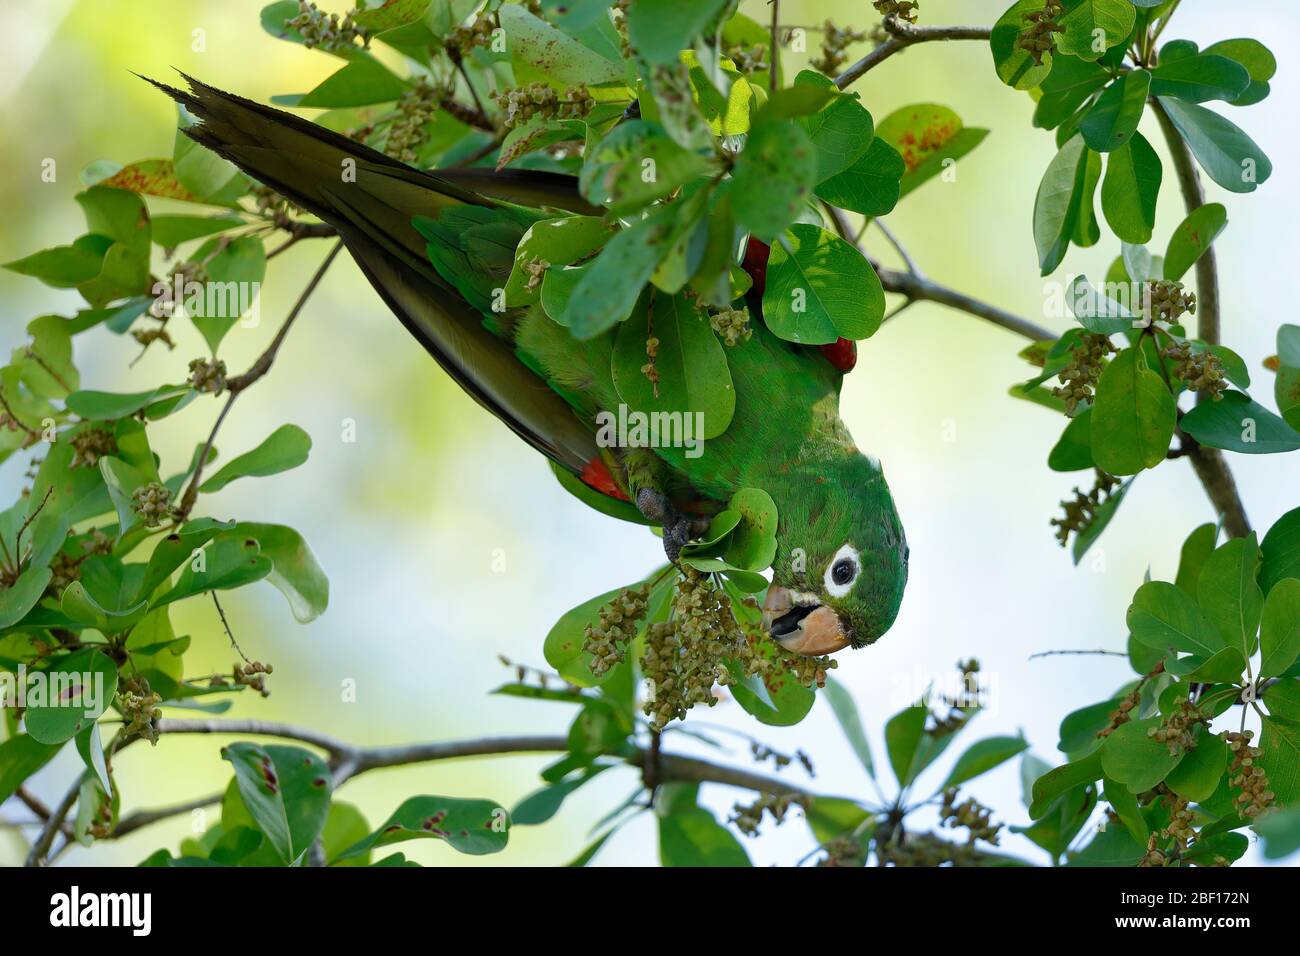 Der Hispaniolan Sittich oder perico ist eine Papageienart aus der Familie Psittacidae. Es ist endemisch auf der Insel Hispaniola. Stockfoto